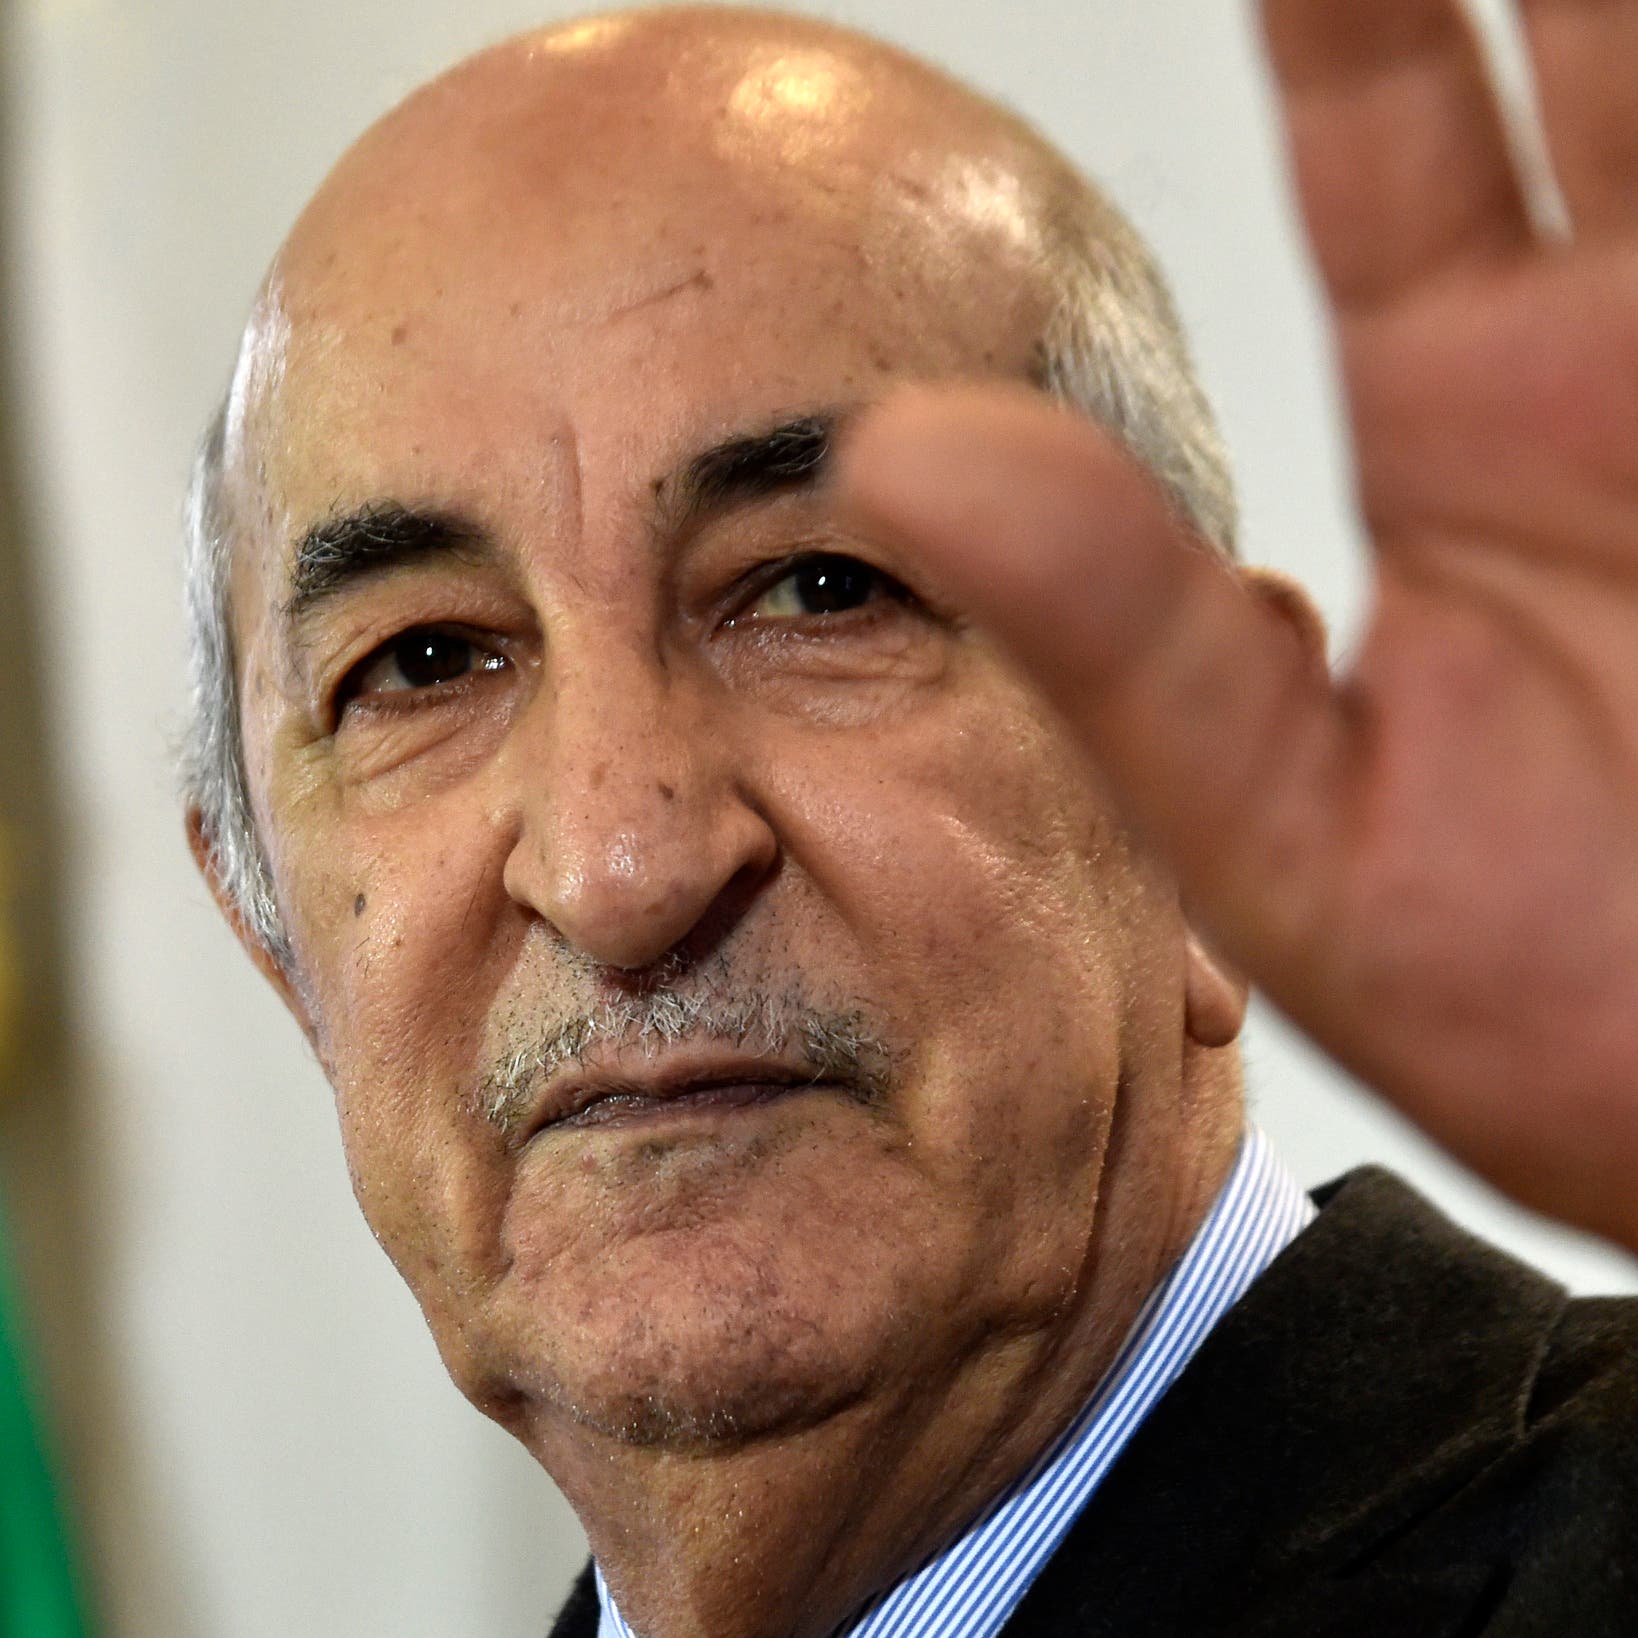   الرئيس الجزائري يأمر بوقف ضخ الغاز إلى إسبانيا عبر المغرب